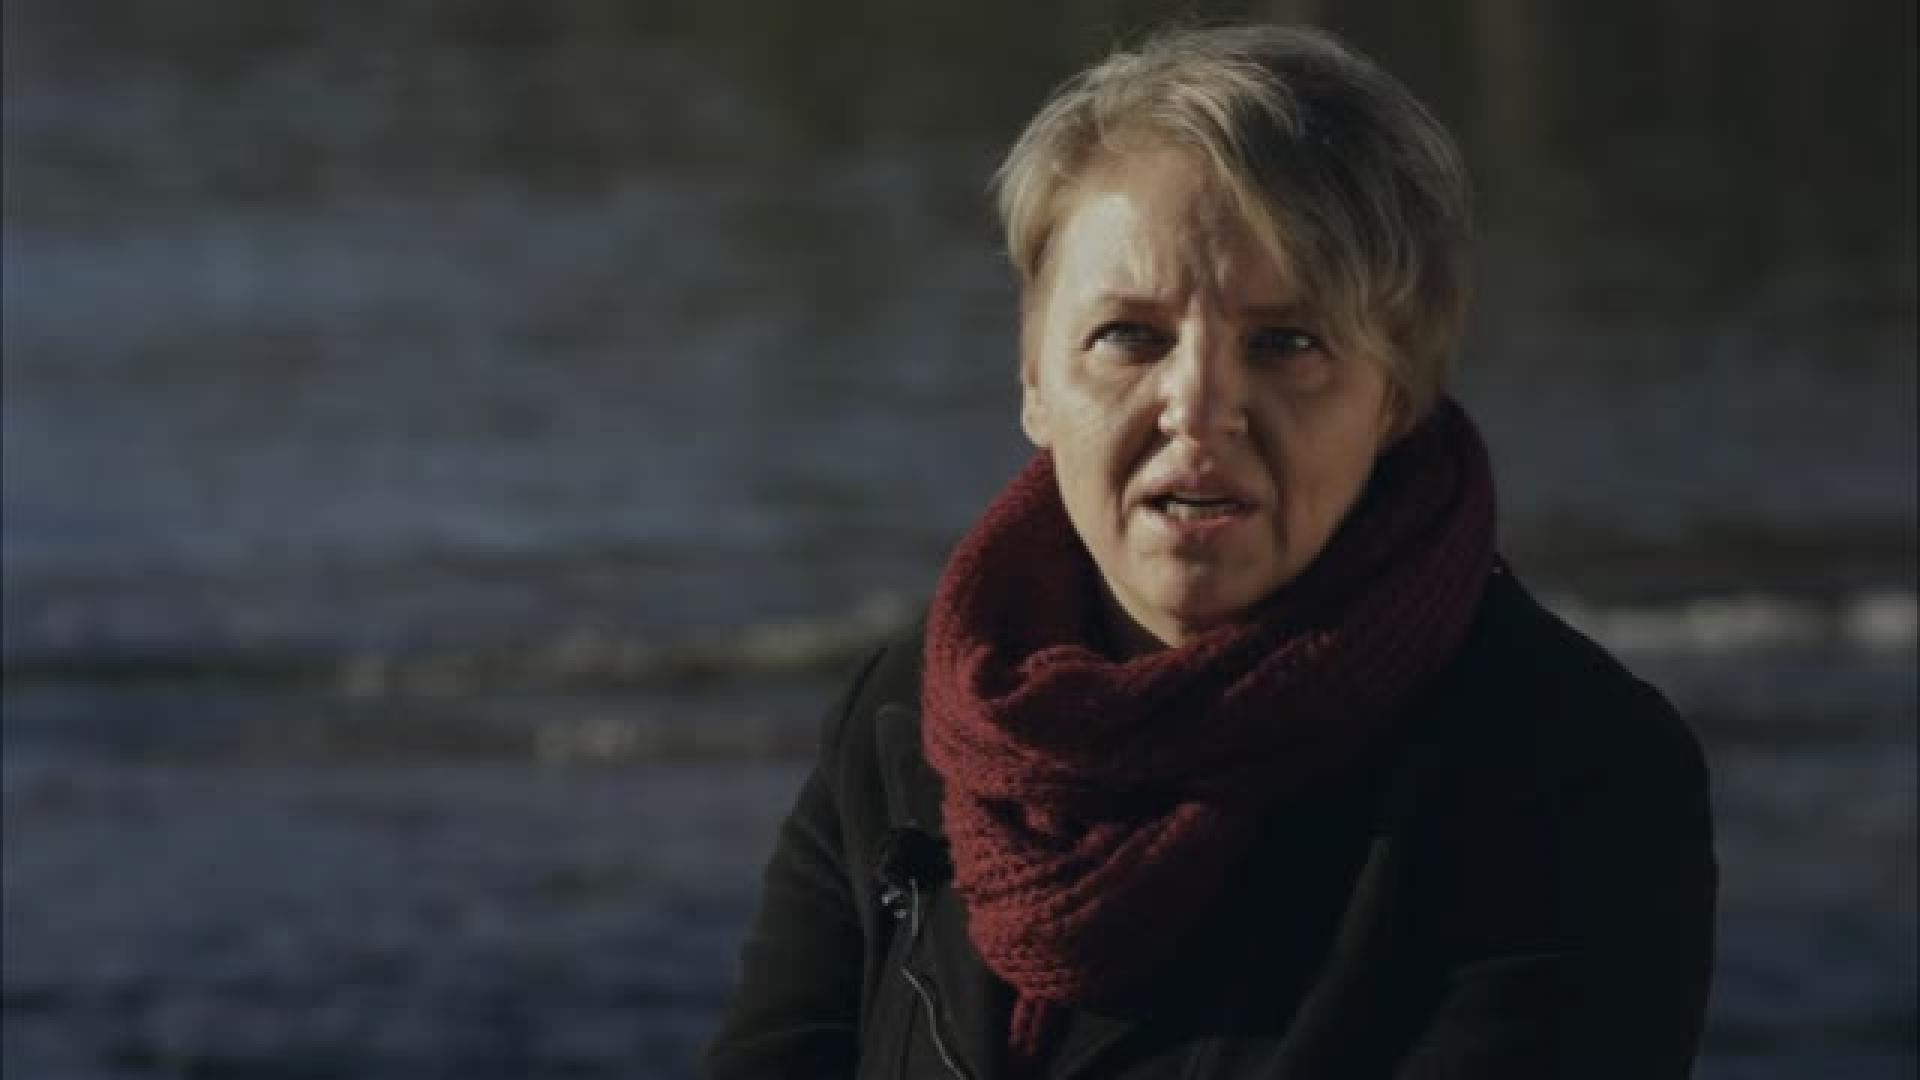 Tsunamitarinoita: Liisa Suonsivu ehti ajatella aallon sisällä: "Miten tää kuoleminen on näin vaikeeta?"